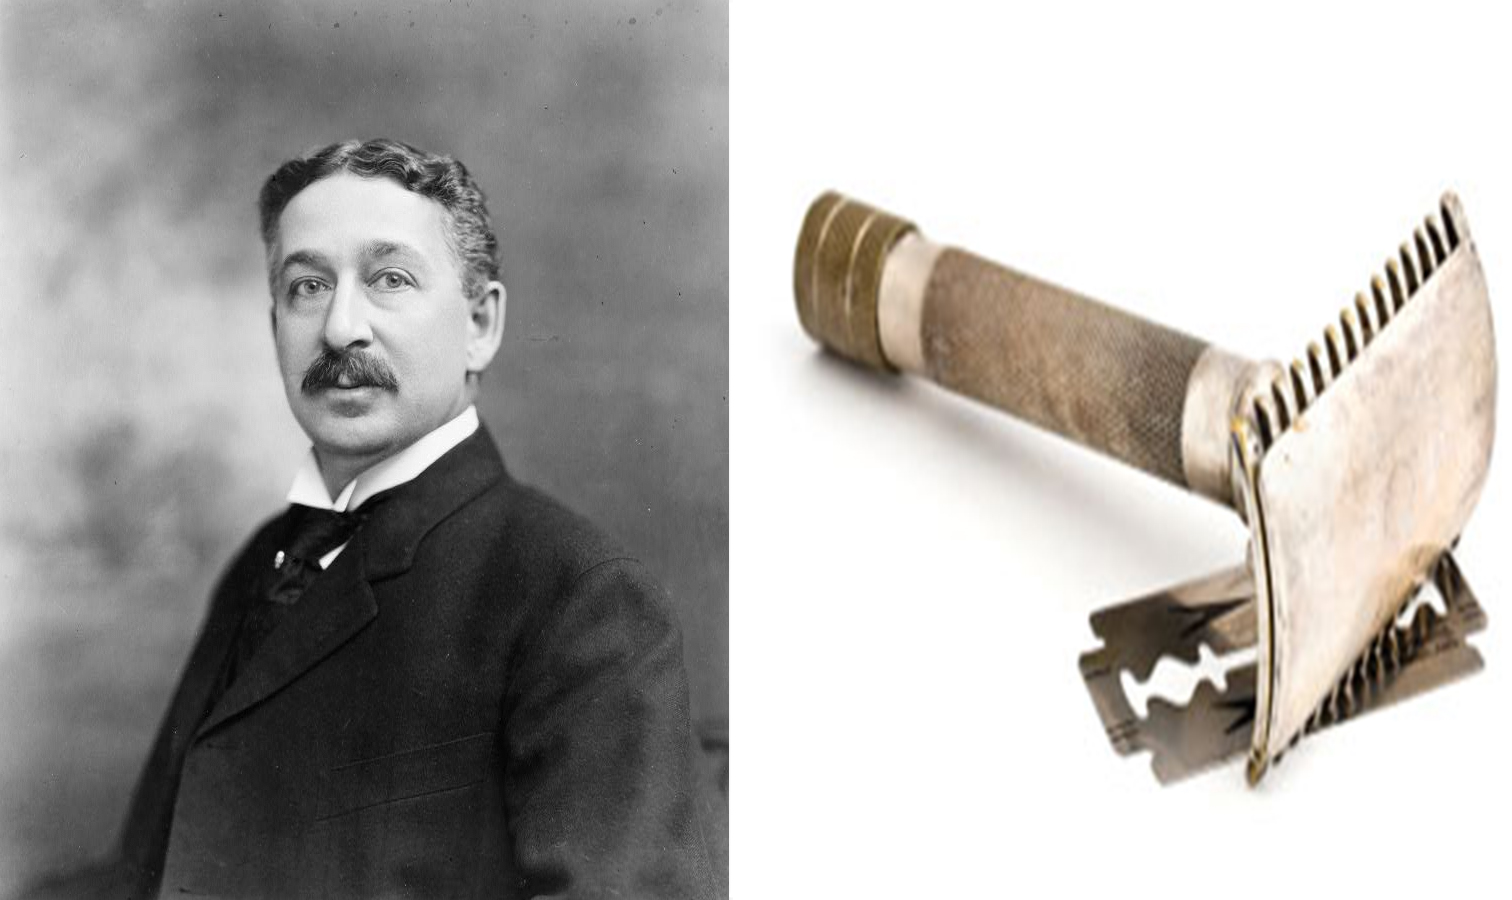 King Kemp Džilet, izumitelj nožića za brijanje